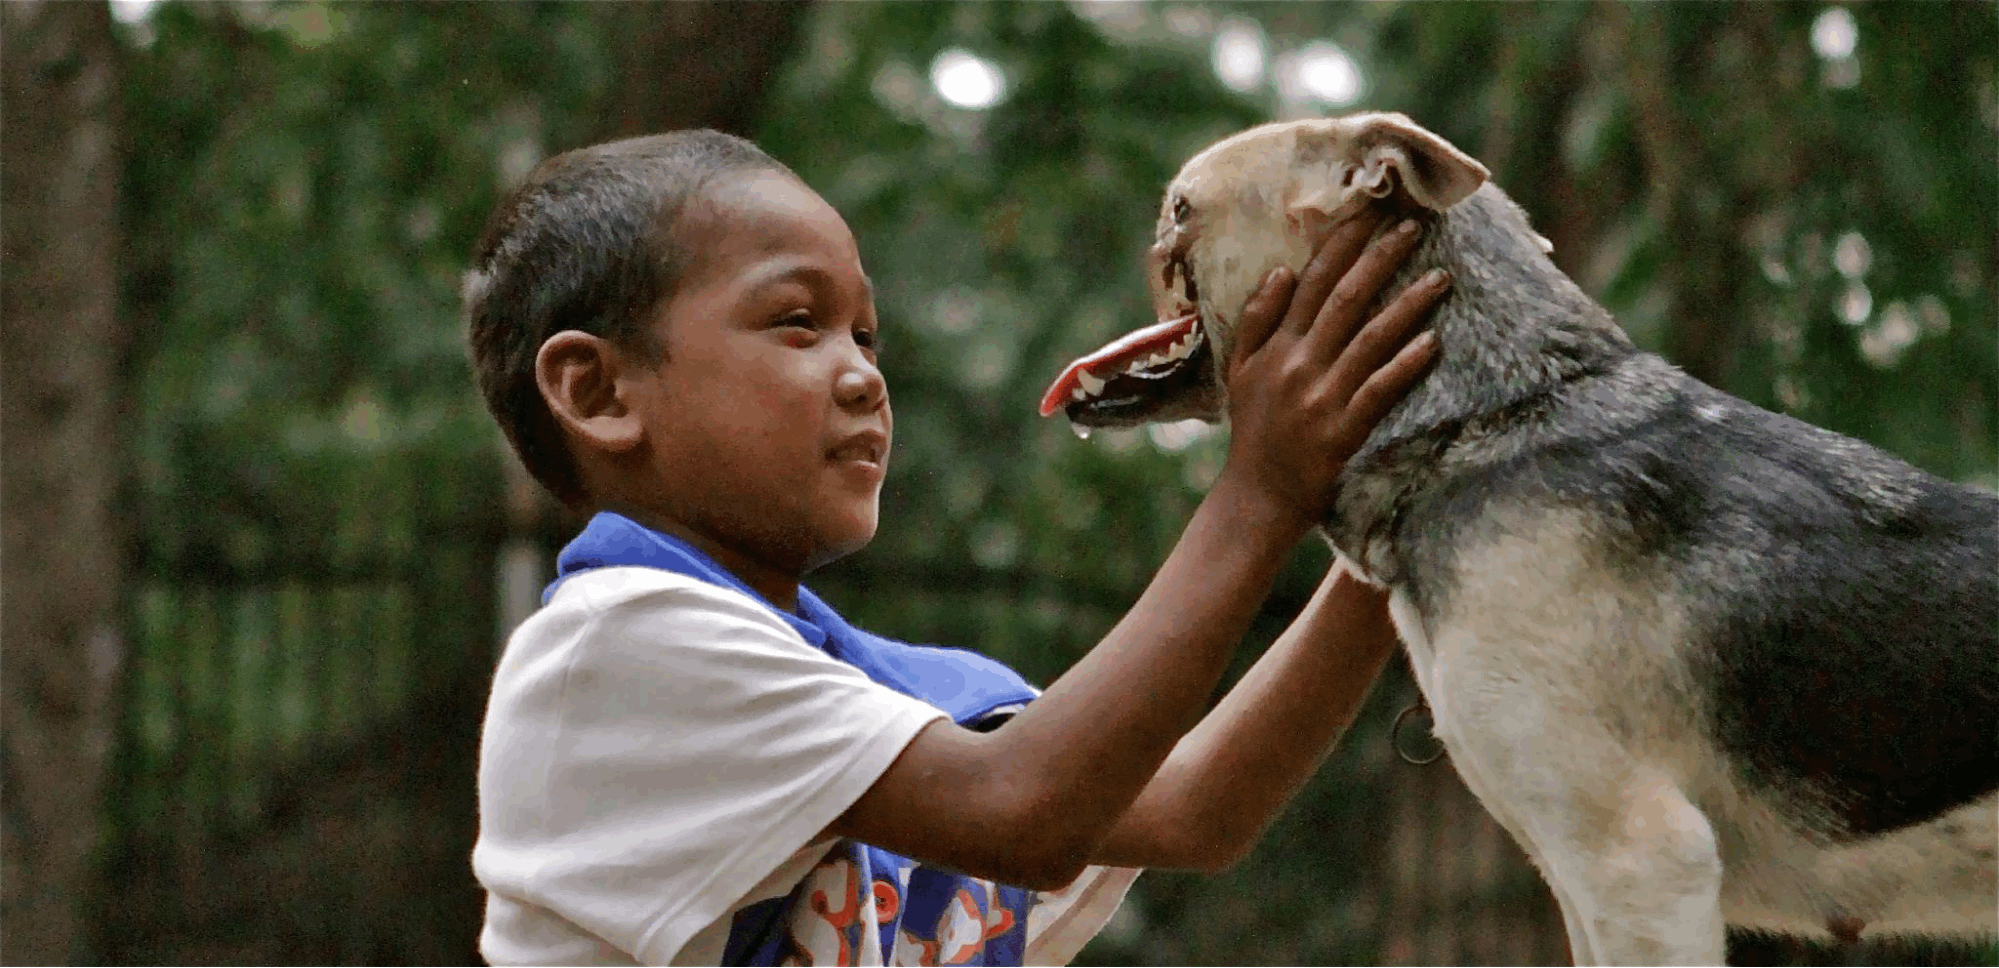 Heroic dog Kabang dies